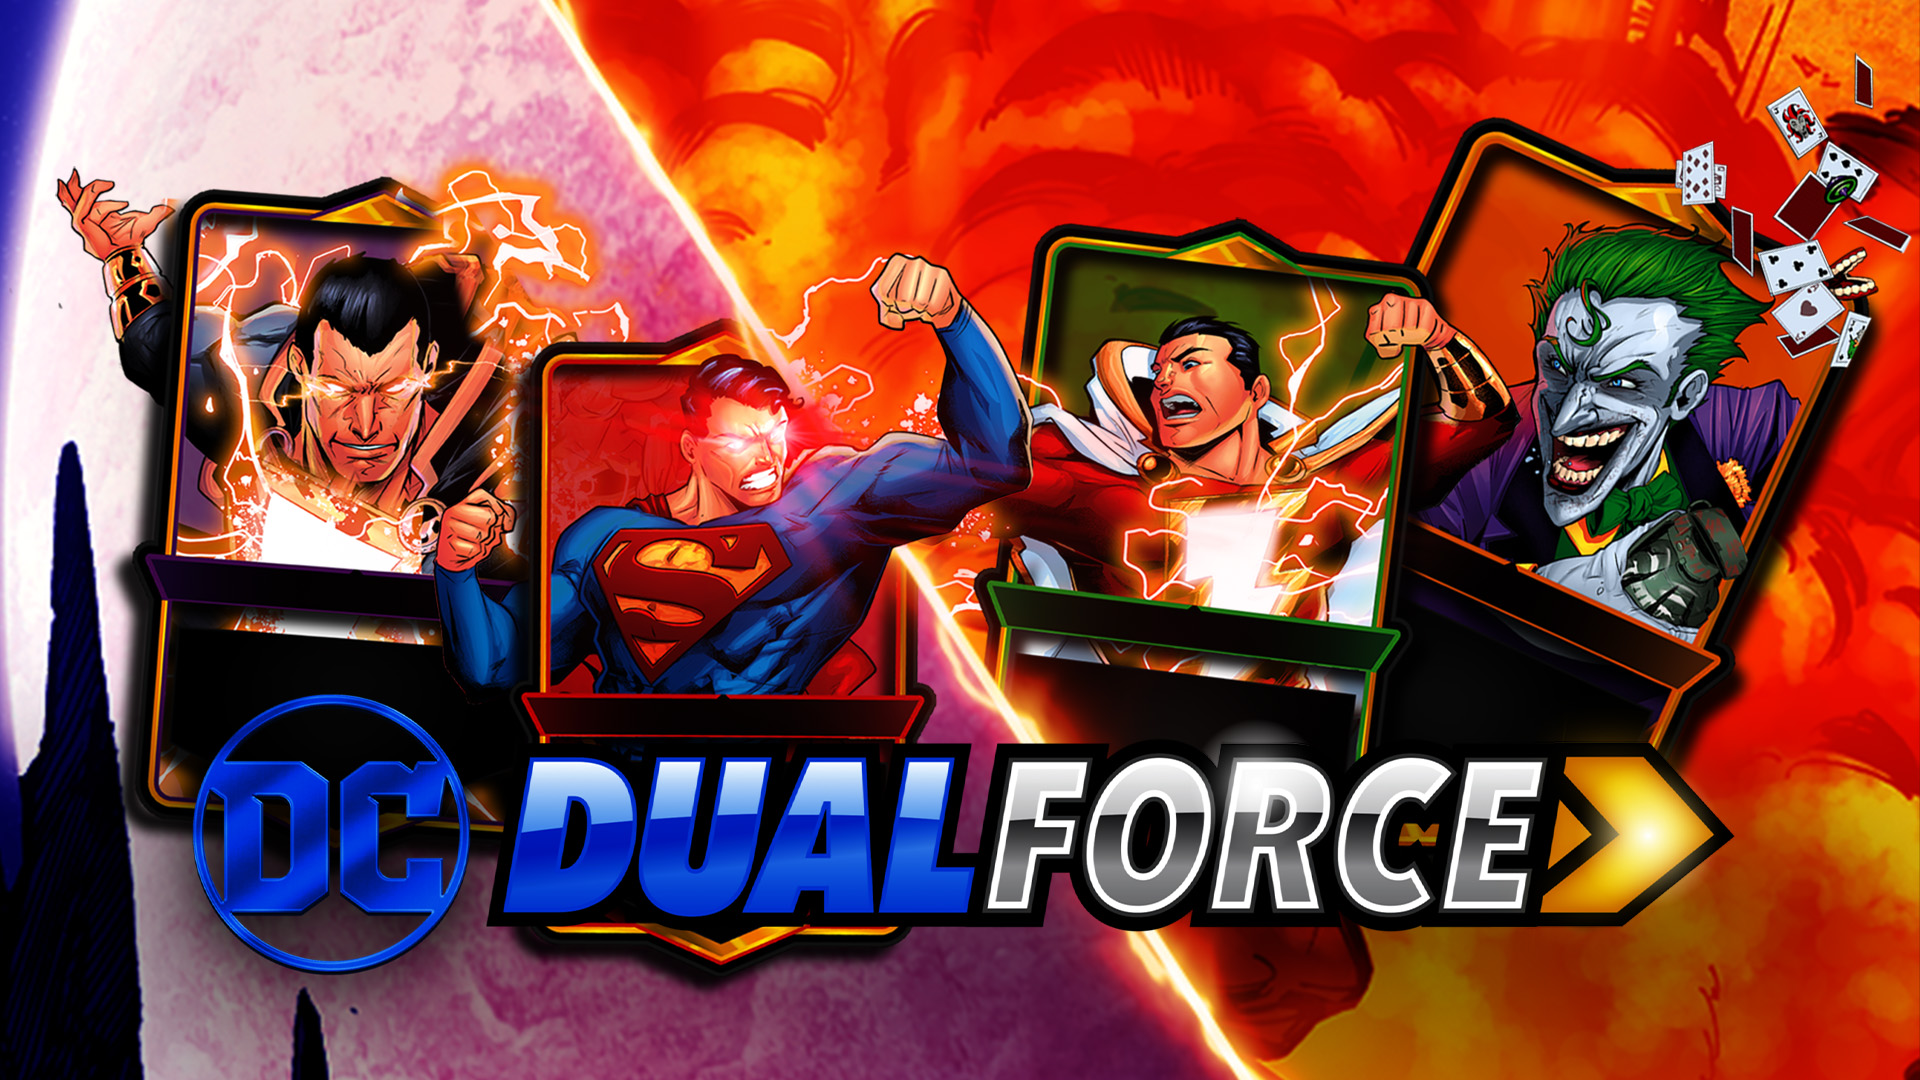 DC Dual Force idzie do piachu. Pewnie nigdy nie słyszeliście o tej grze